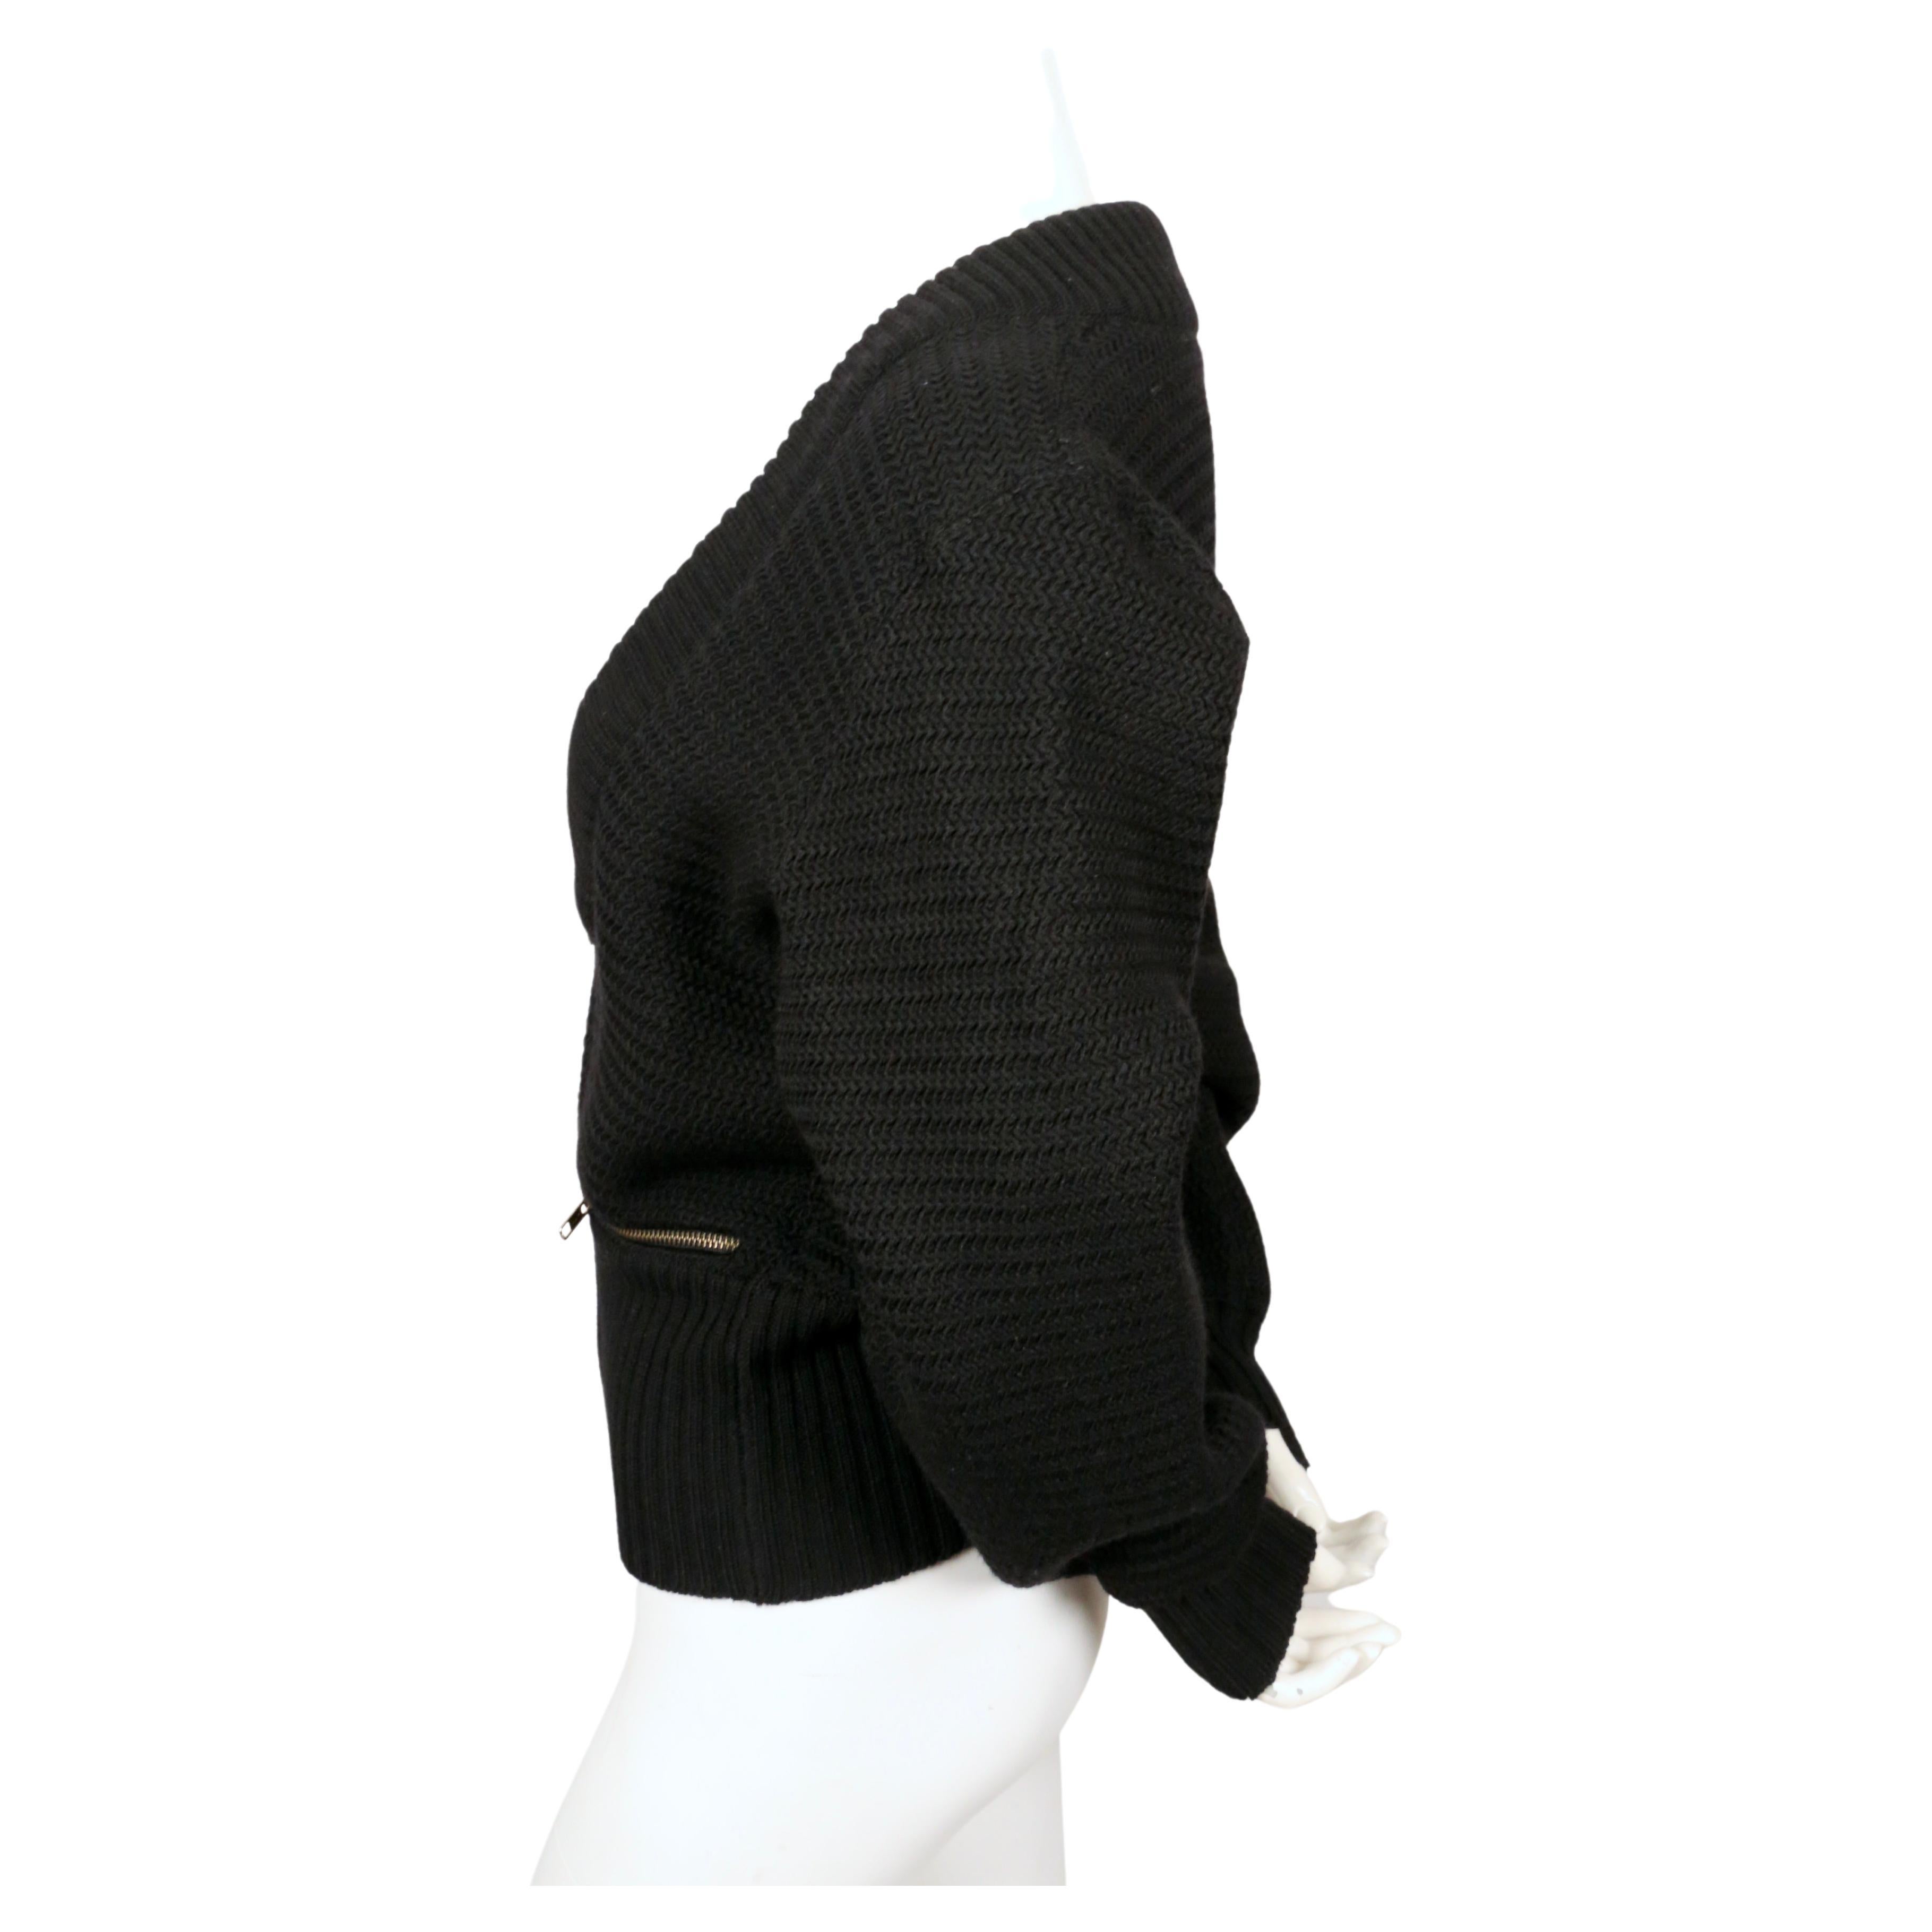 Veste cardigan en laine noire, avec fermetures éclair en laiton et bordures côtelées, de Azzedine Alaia, datant de l'automne 1986, telle qu'elle a été vue sur le défilé. Labellisée taille 'XS' mais peut également convenir à un S. Mesures